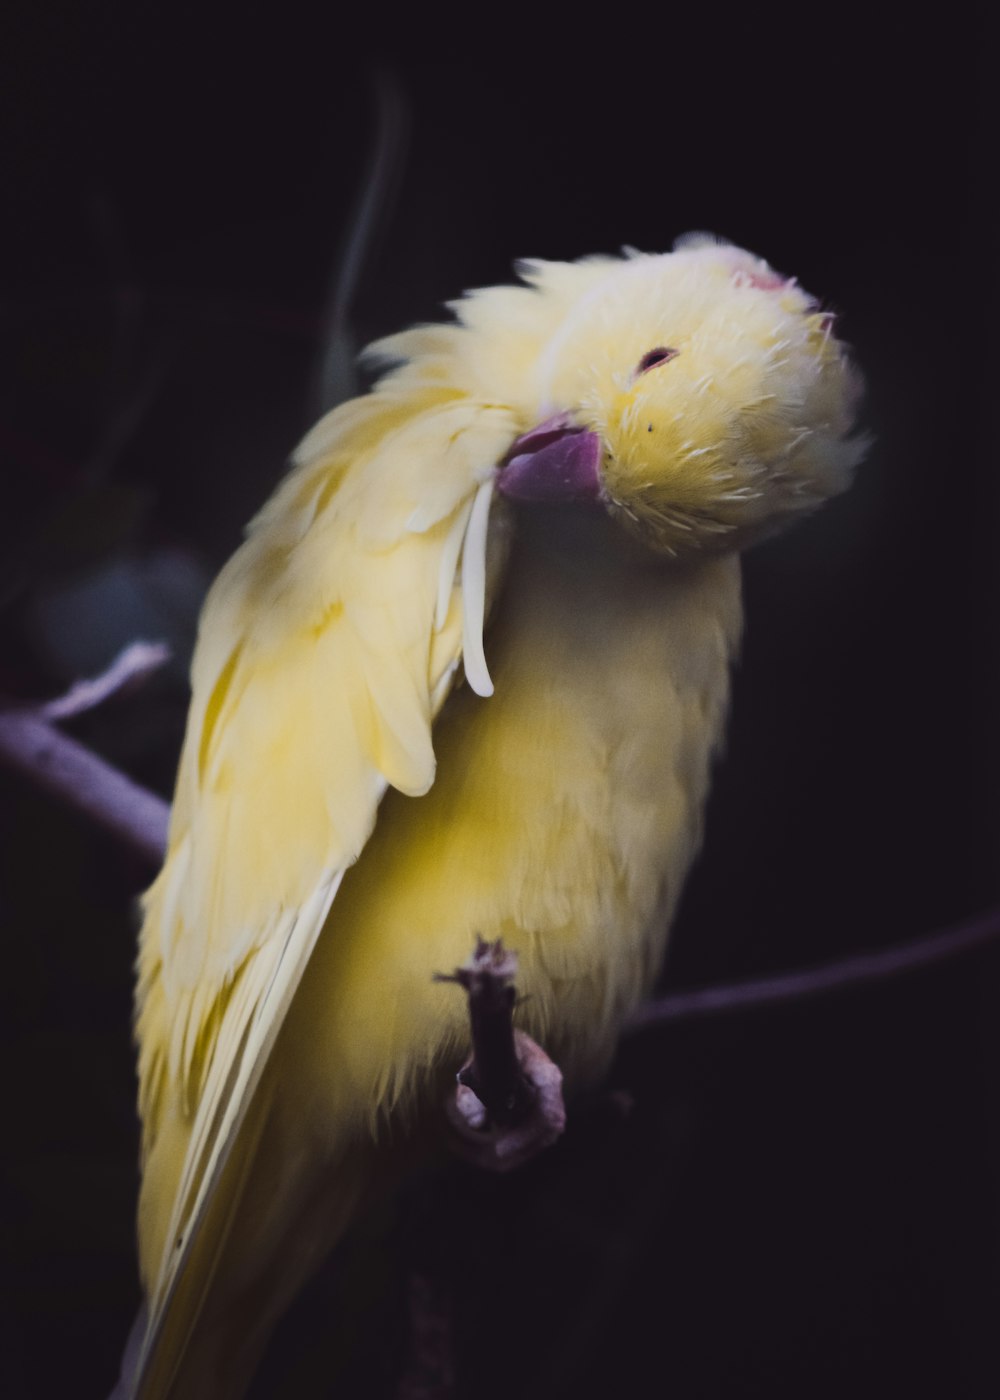 short-beaked yellow bird